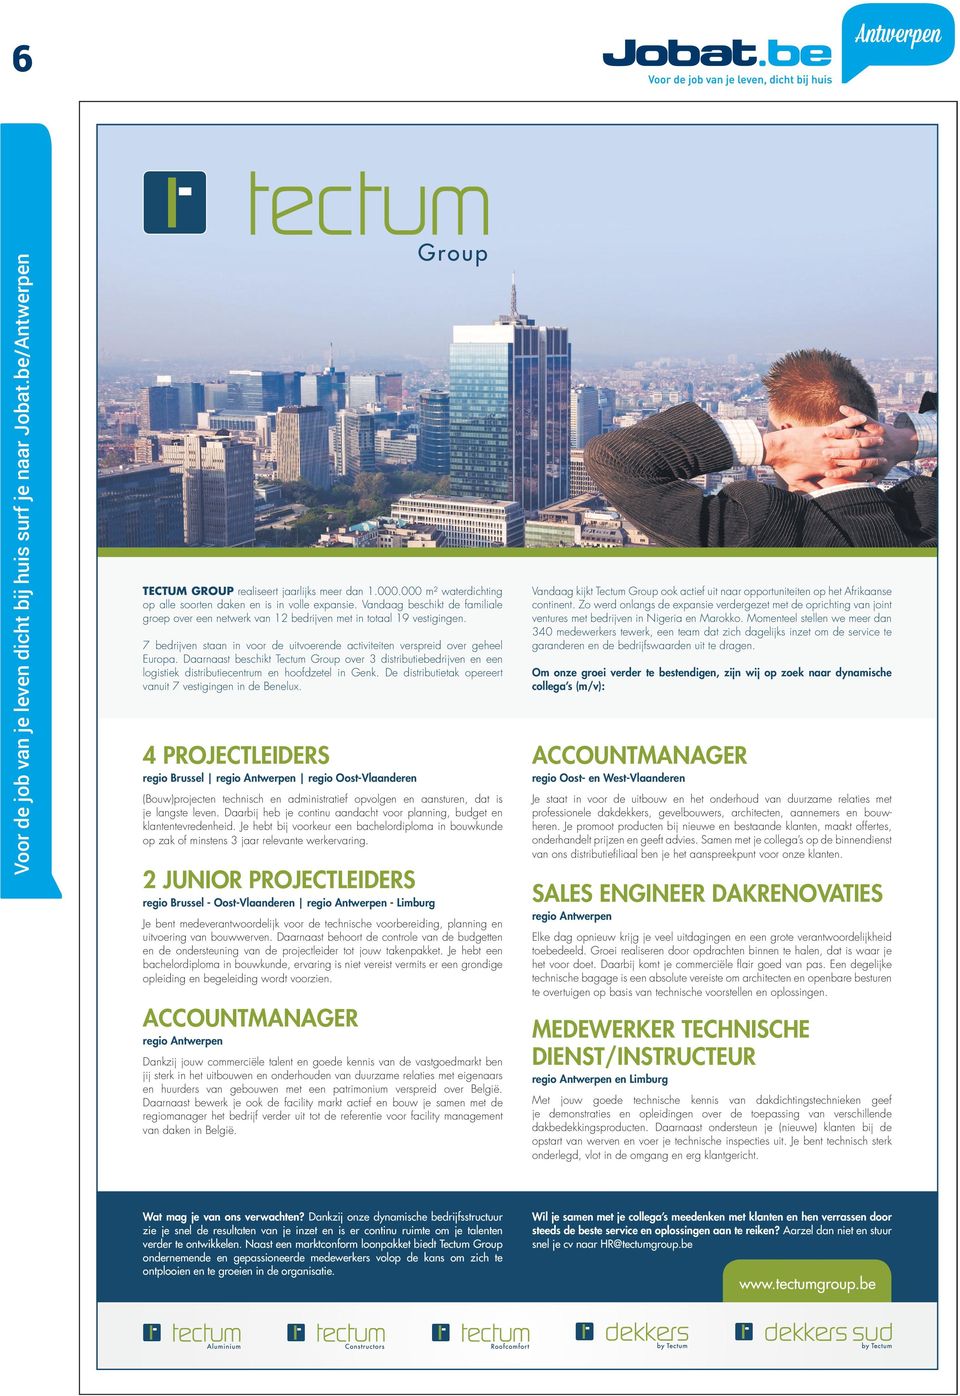 Daarnaast beschikt Tectum Group over 3 distributiebedrijven en een logistiek distributiecentrum en hoofdzetel in Genk. De distributietak opereert vanuit 7 vestigingen in de Benelux.